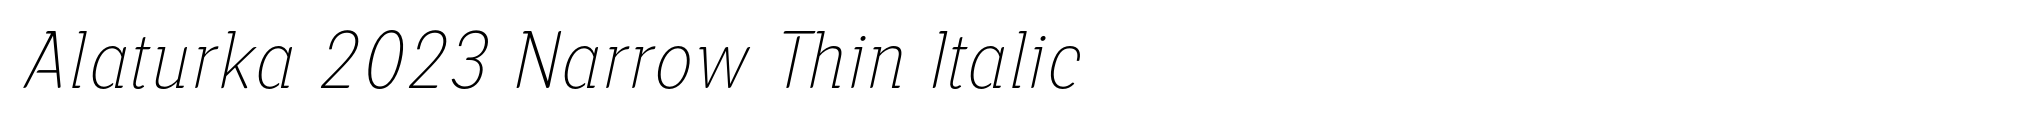 Alaturka 2023 Narrow Thin Italic image